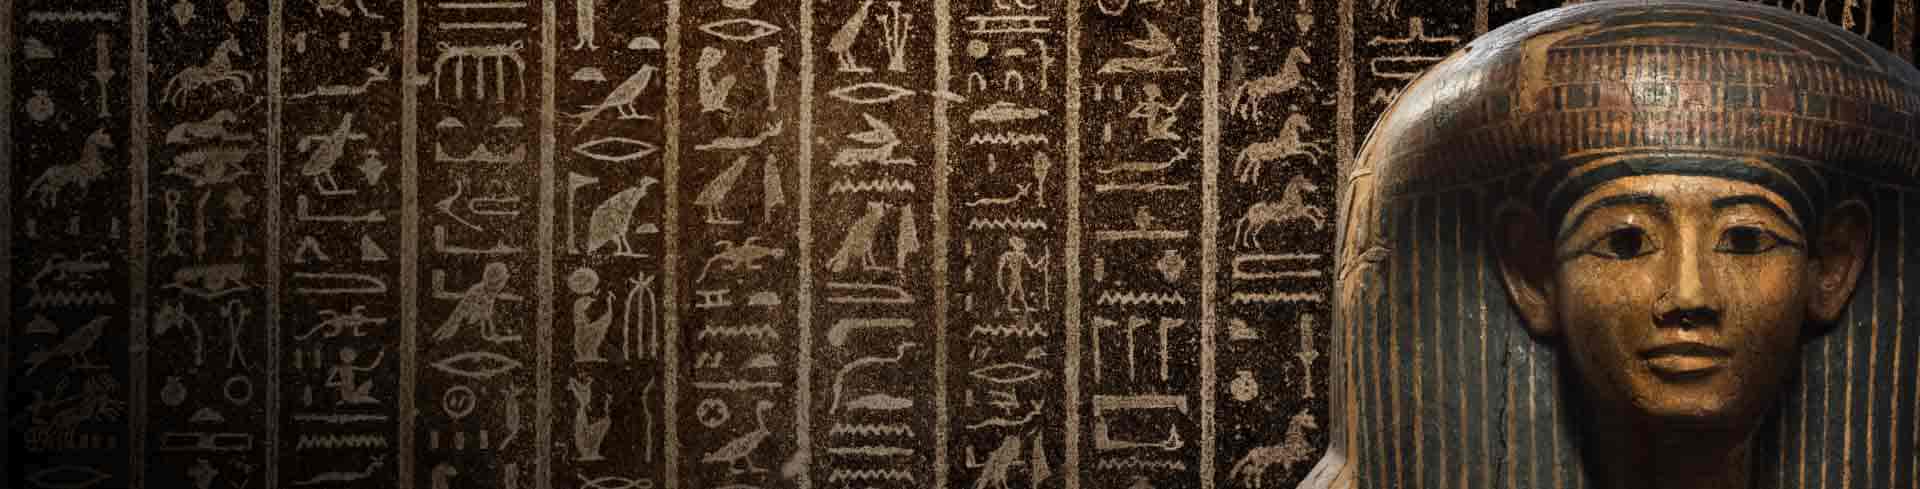 Antiguo Egipto: Jeroglíficos y pirámides